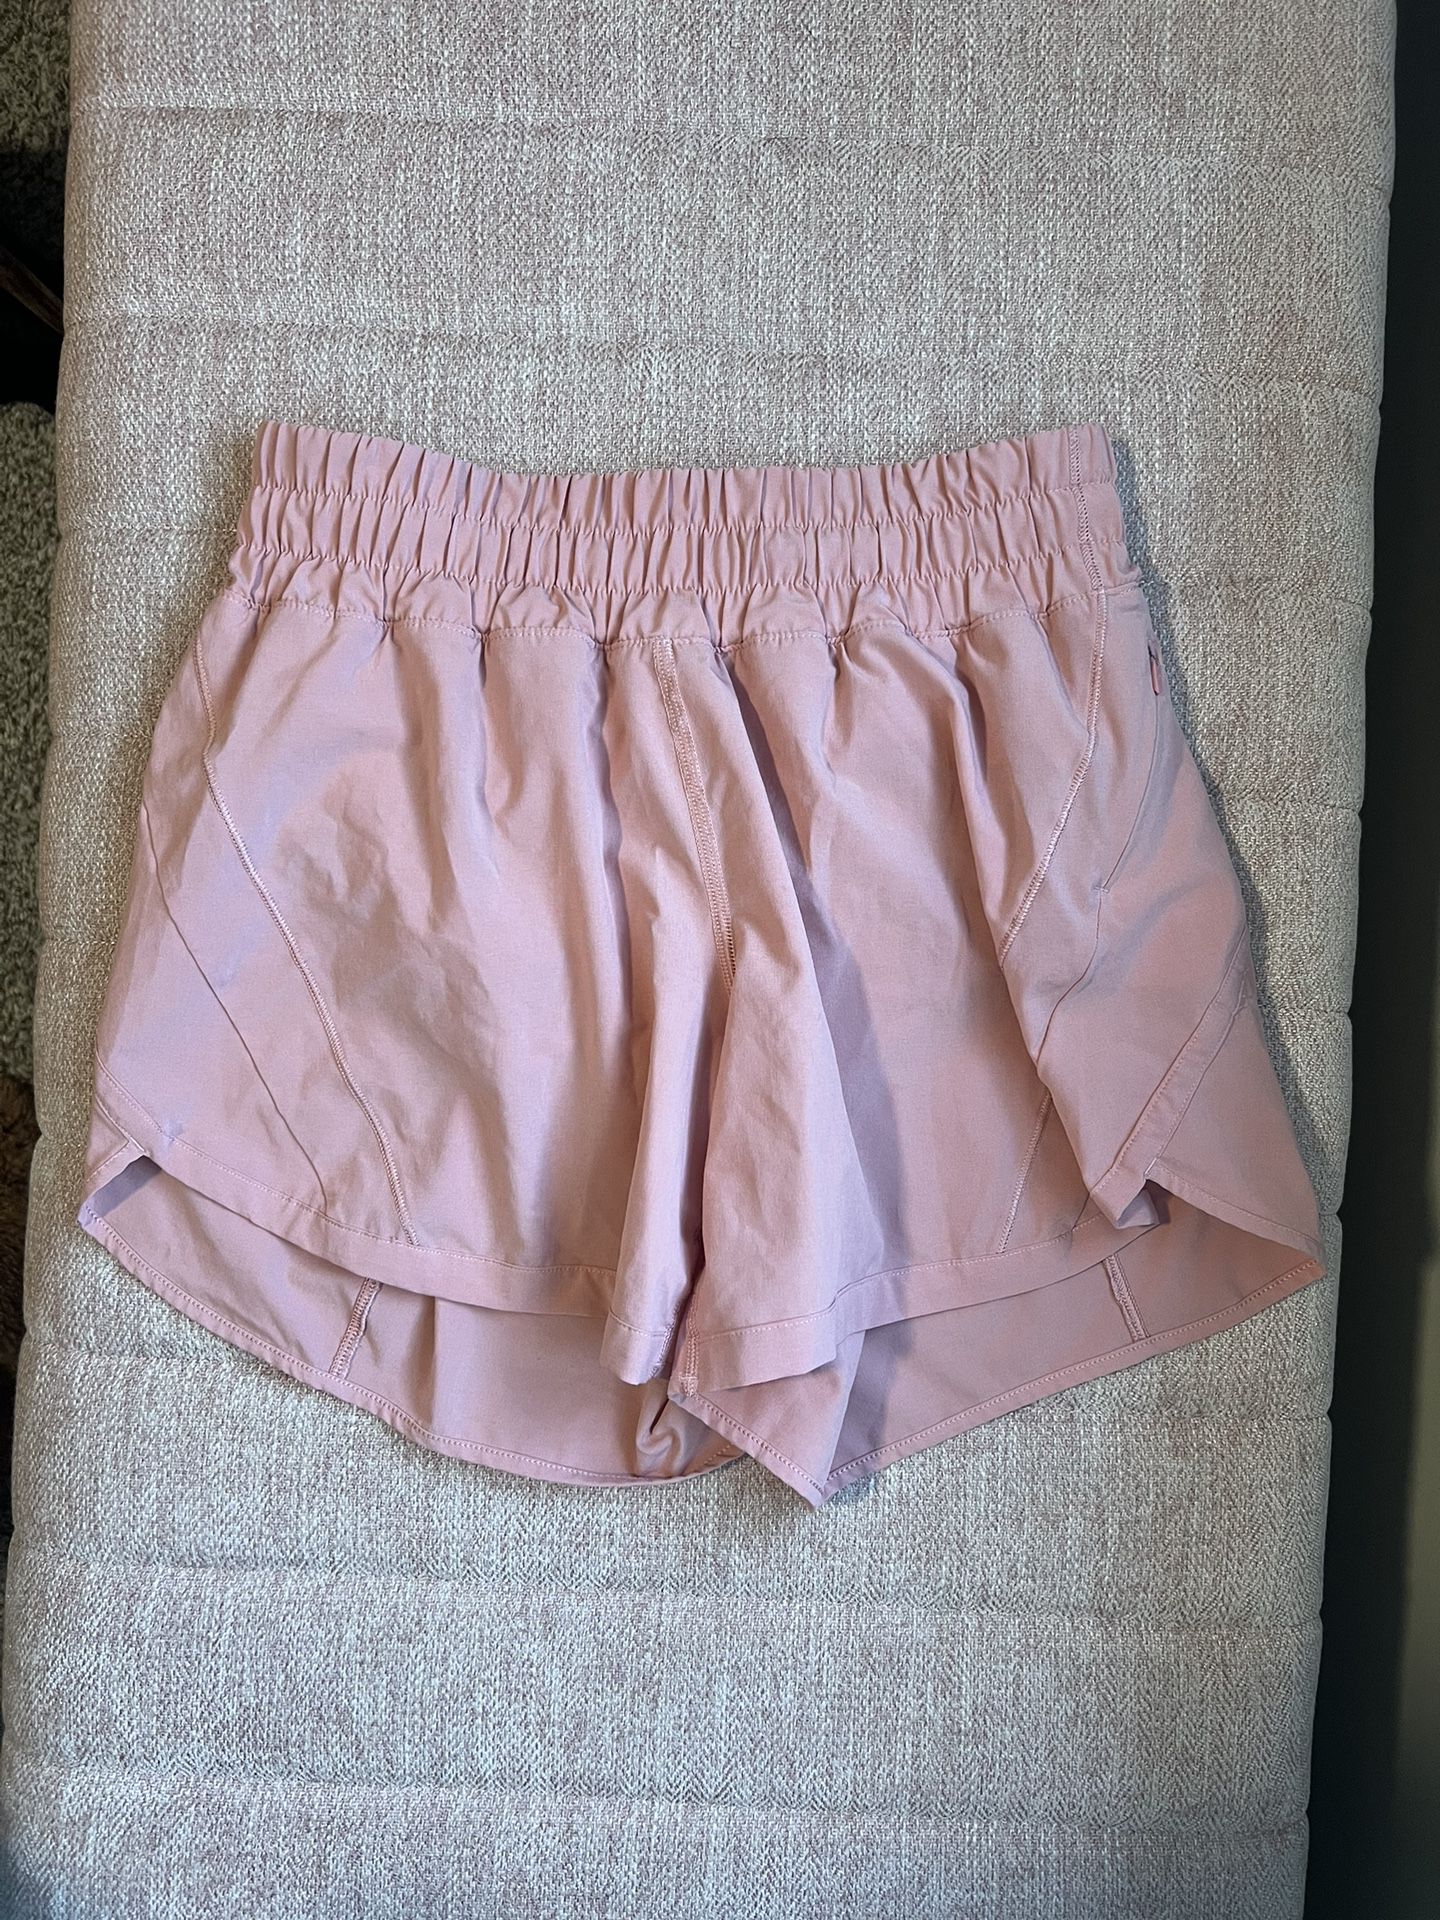 Lululemon Pink Athletic Shorts 